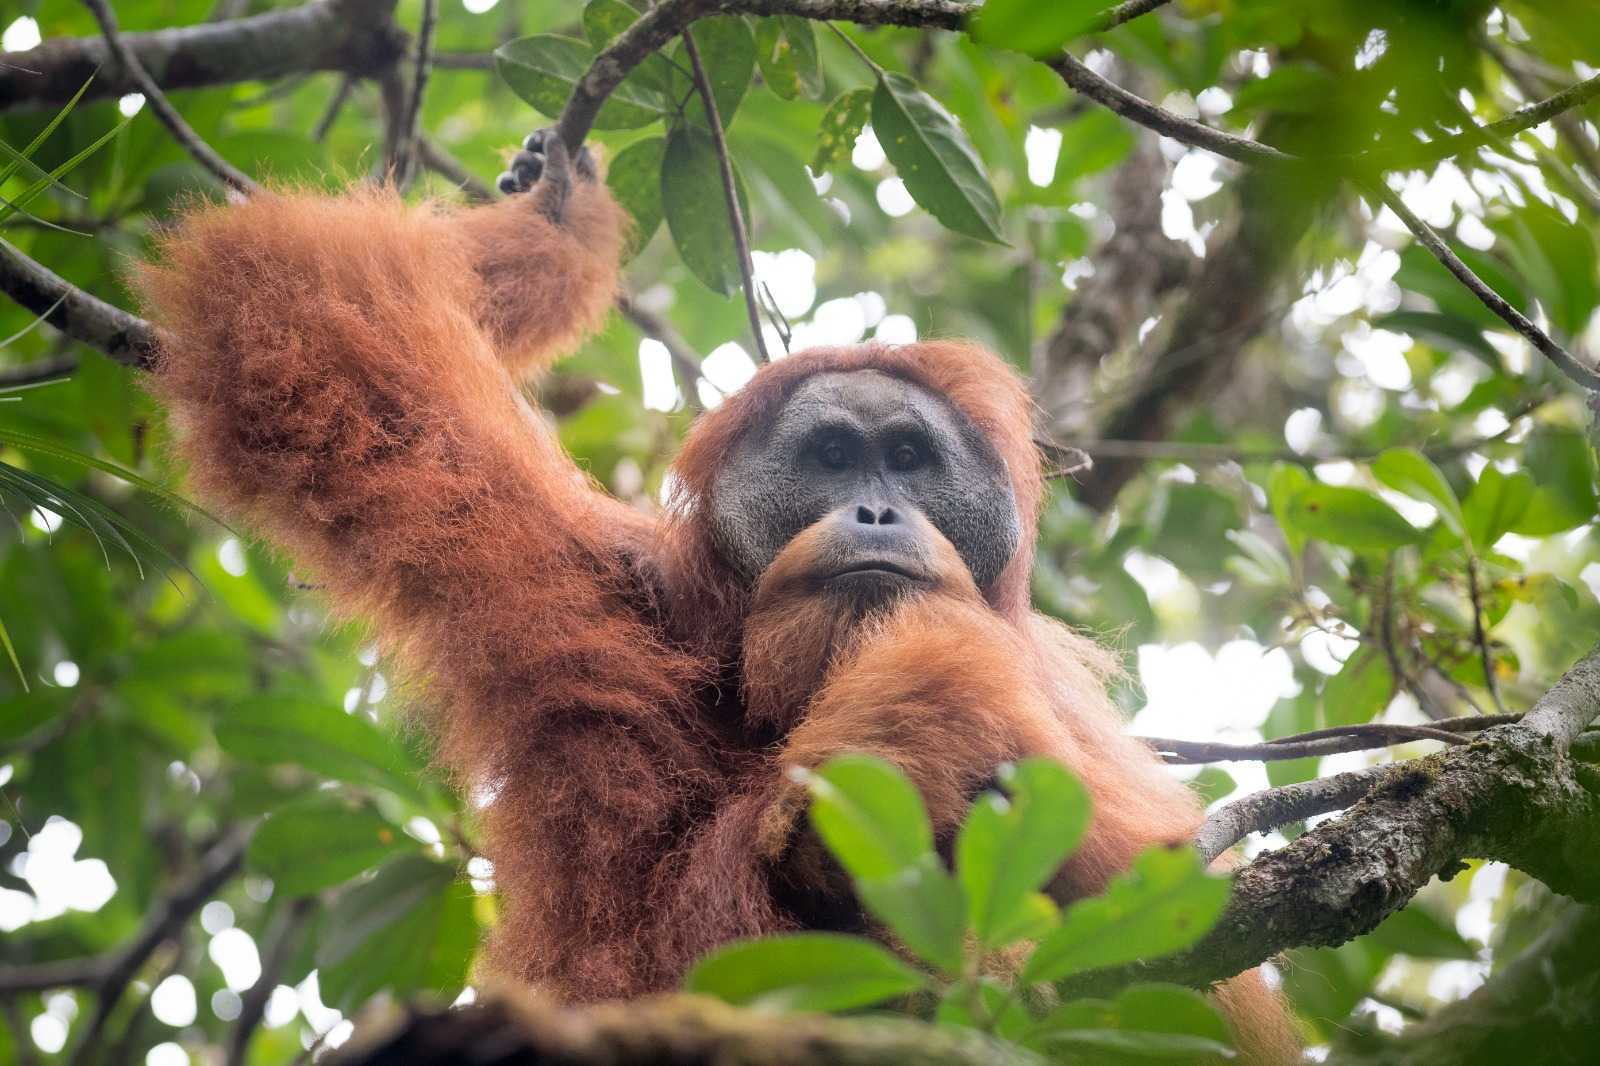 Orangutan tapanuli, satwa yang keberadaannya terancam akibat pembangunan PLTA Batang Toru. | Foto: Betahita